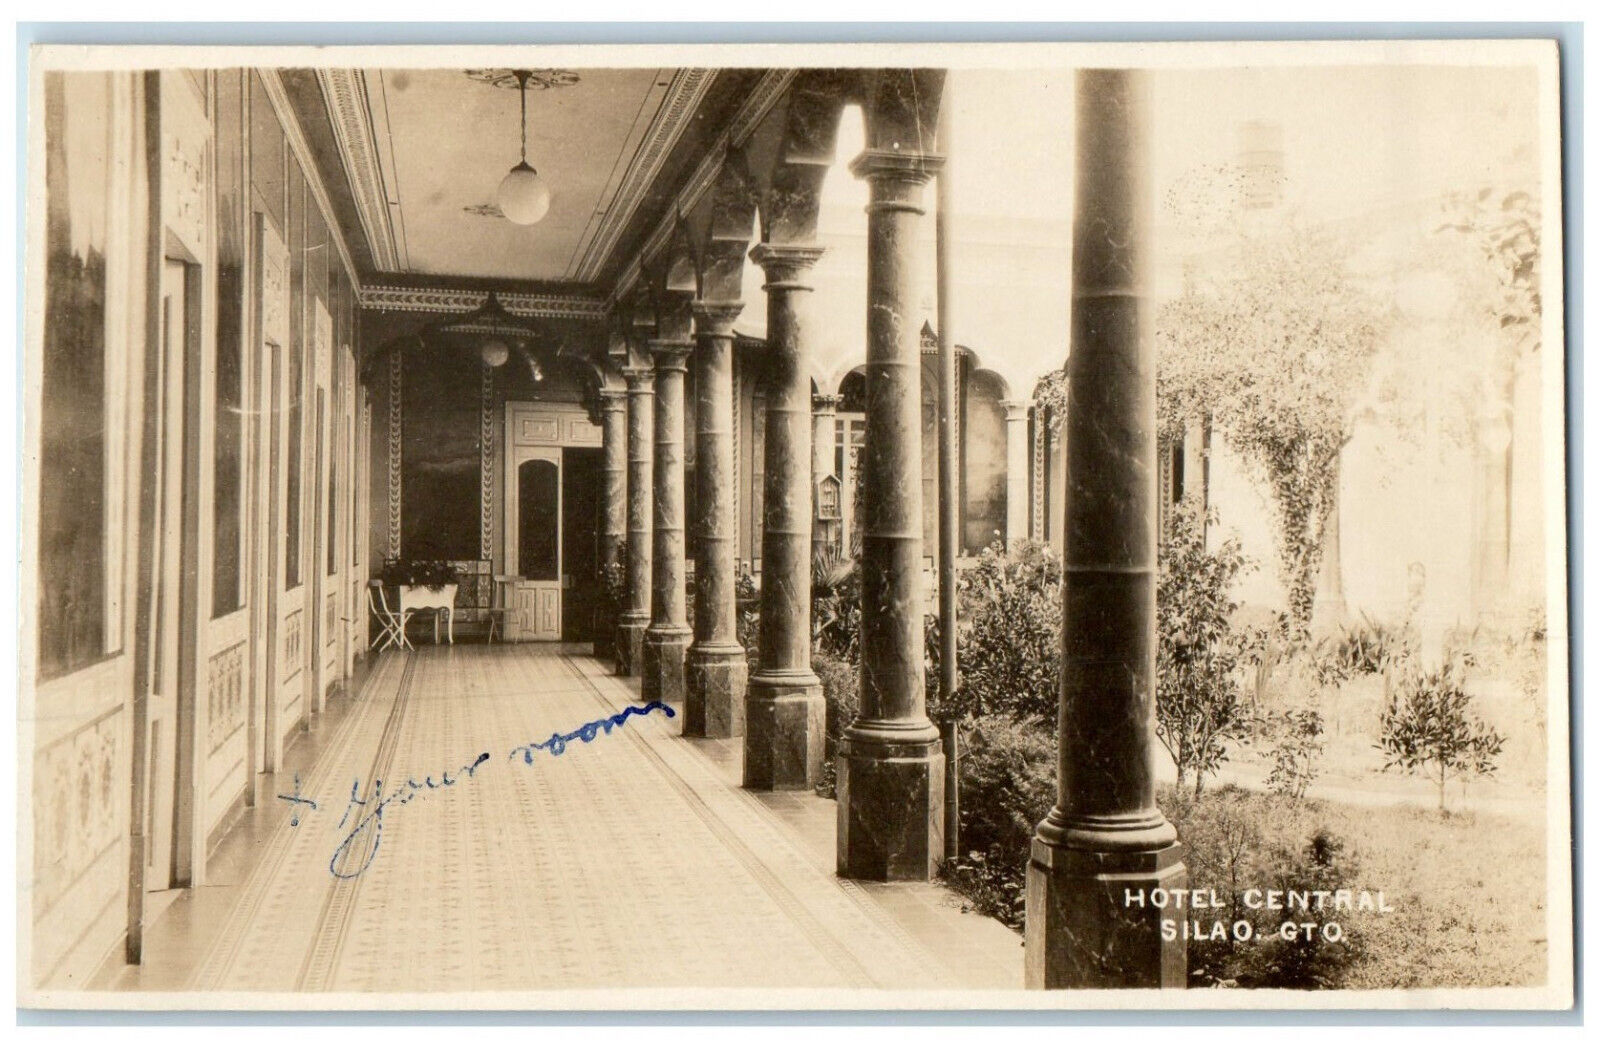 c1940's Hotel Central Silao Guanajuato Hallway Mexico RPPC Photo Postcard